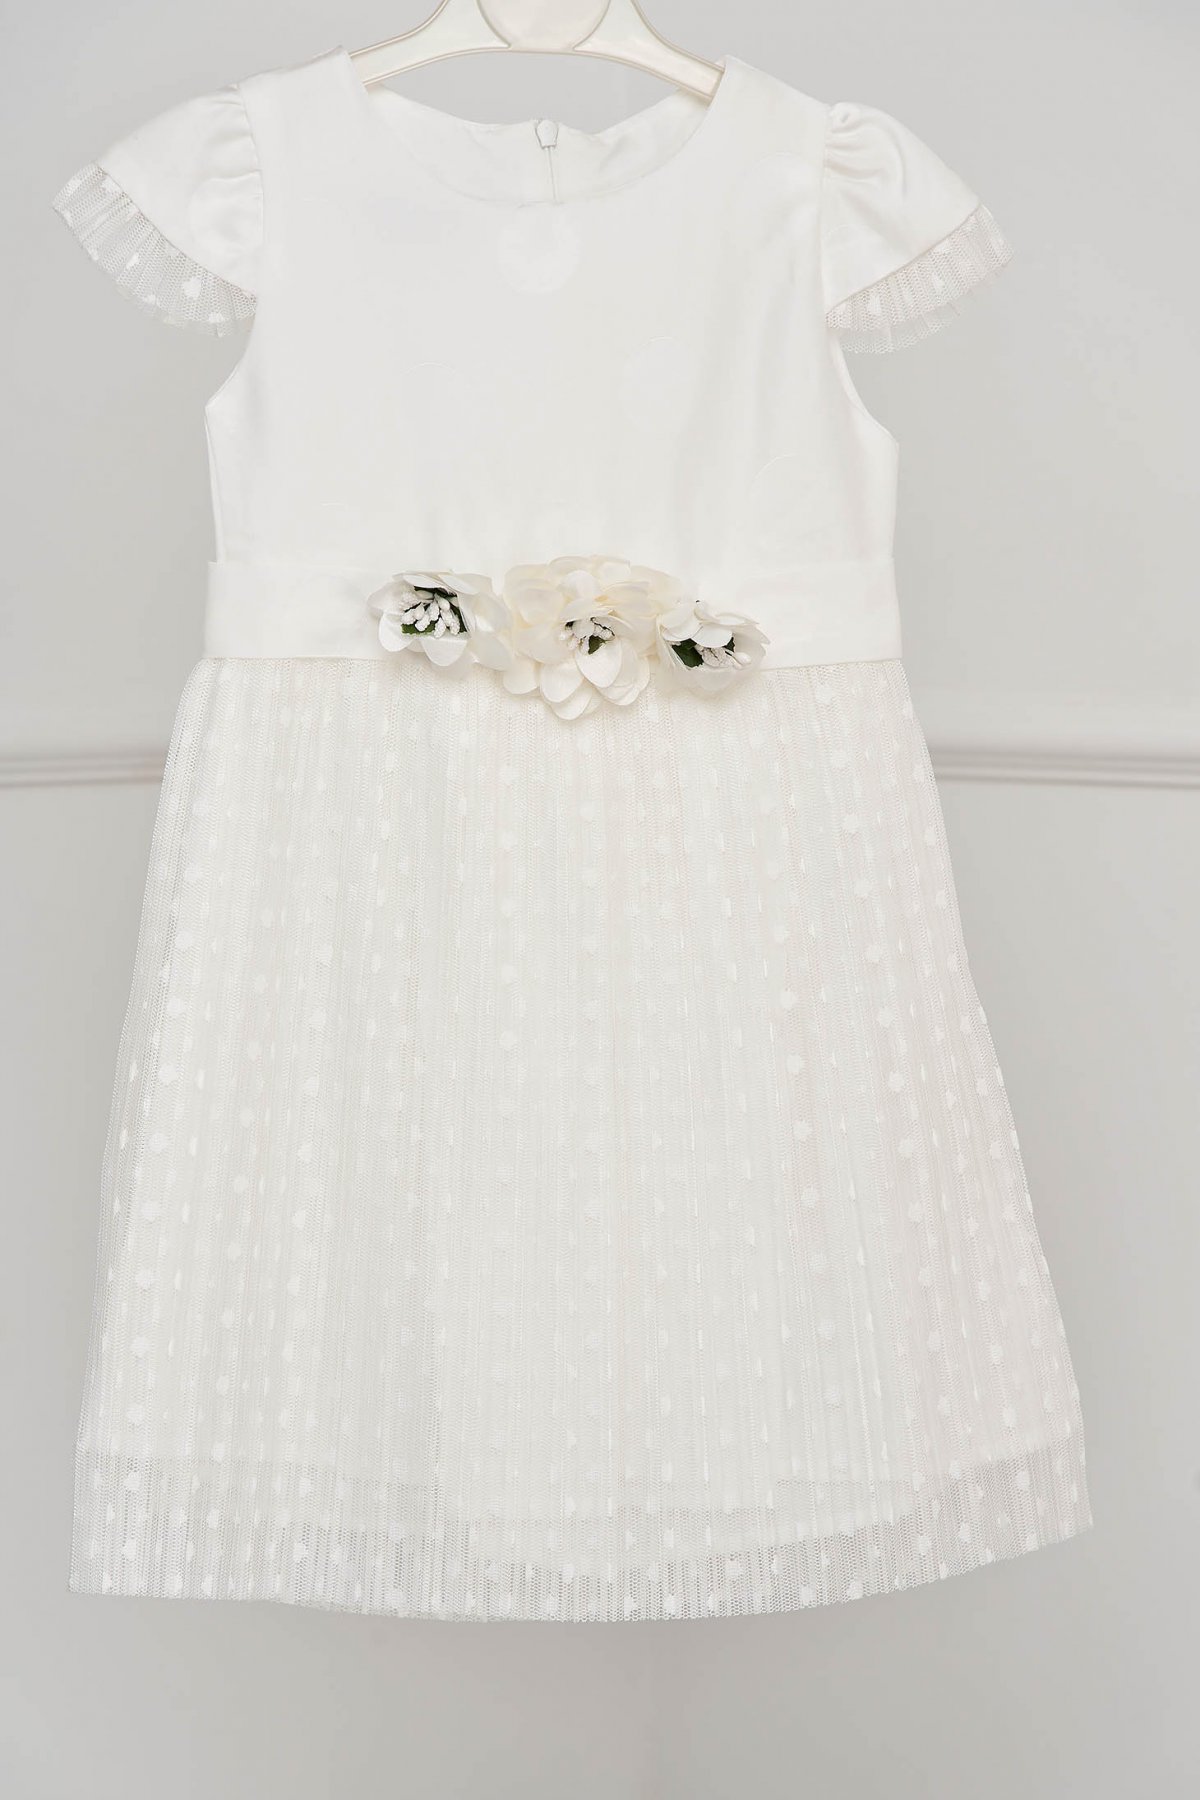 Rochie pentru fetite alba de ocazie in clos din dantela plisata accesorizata cu brose si fundita - medelin.ro